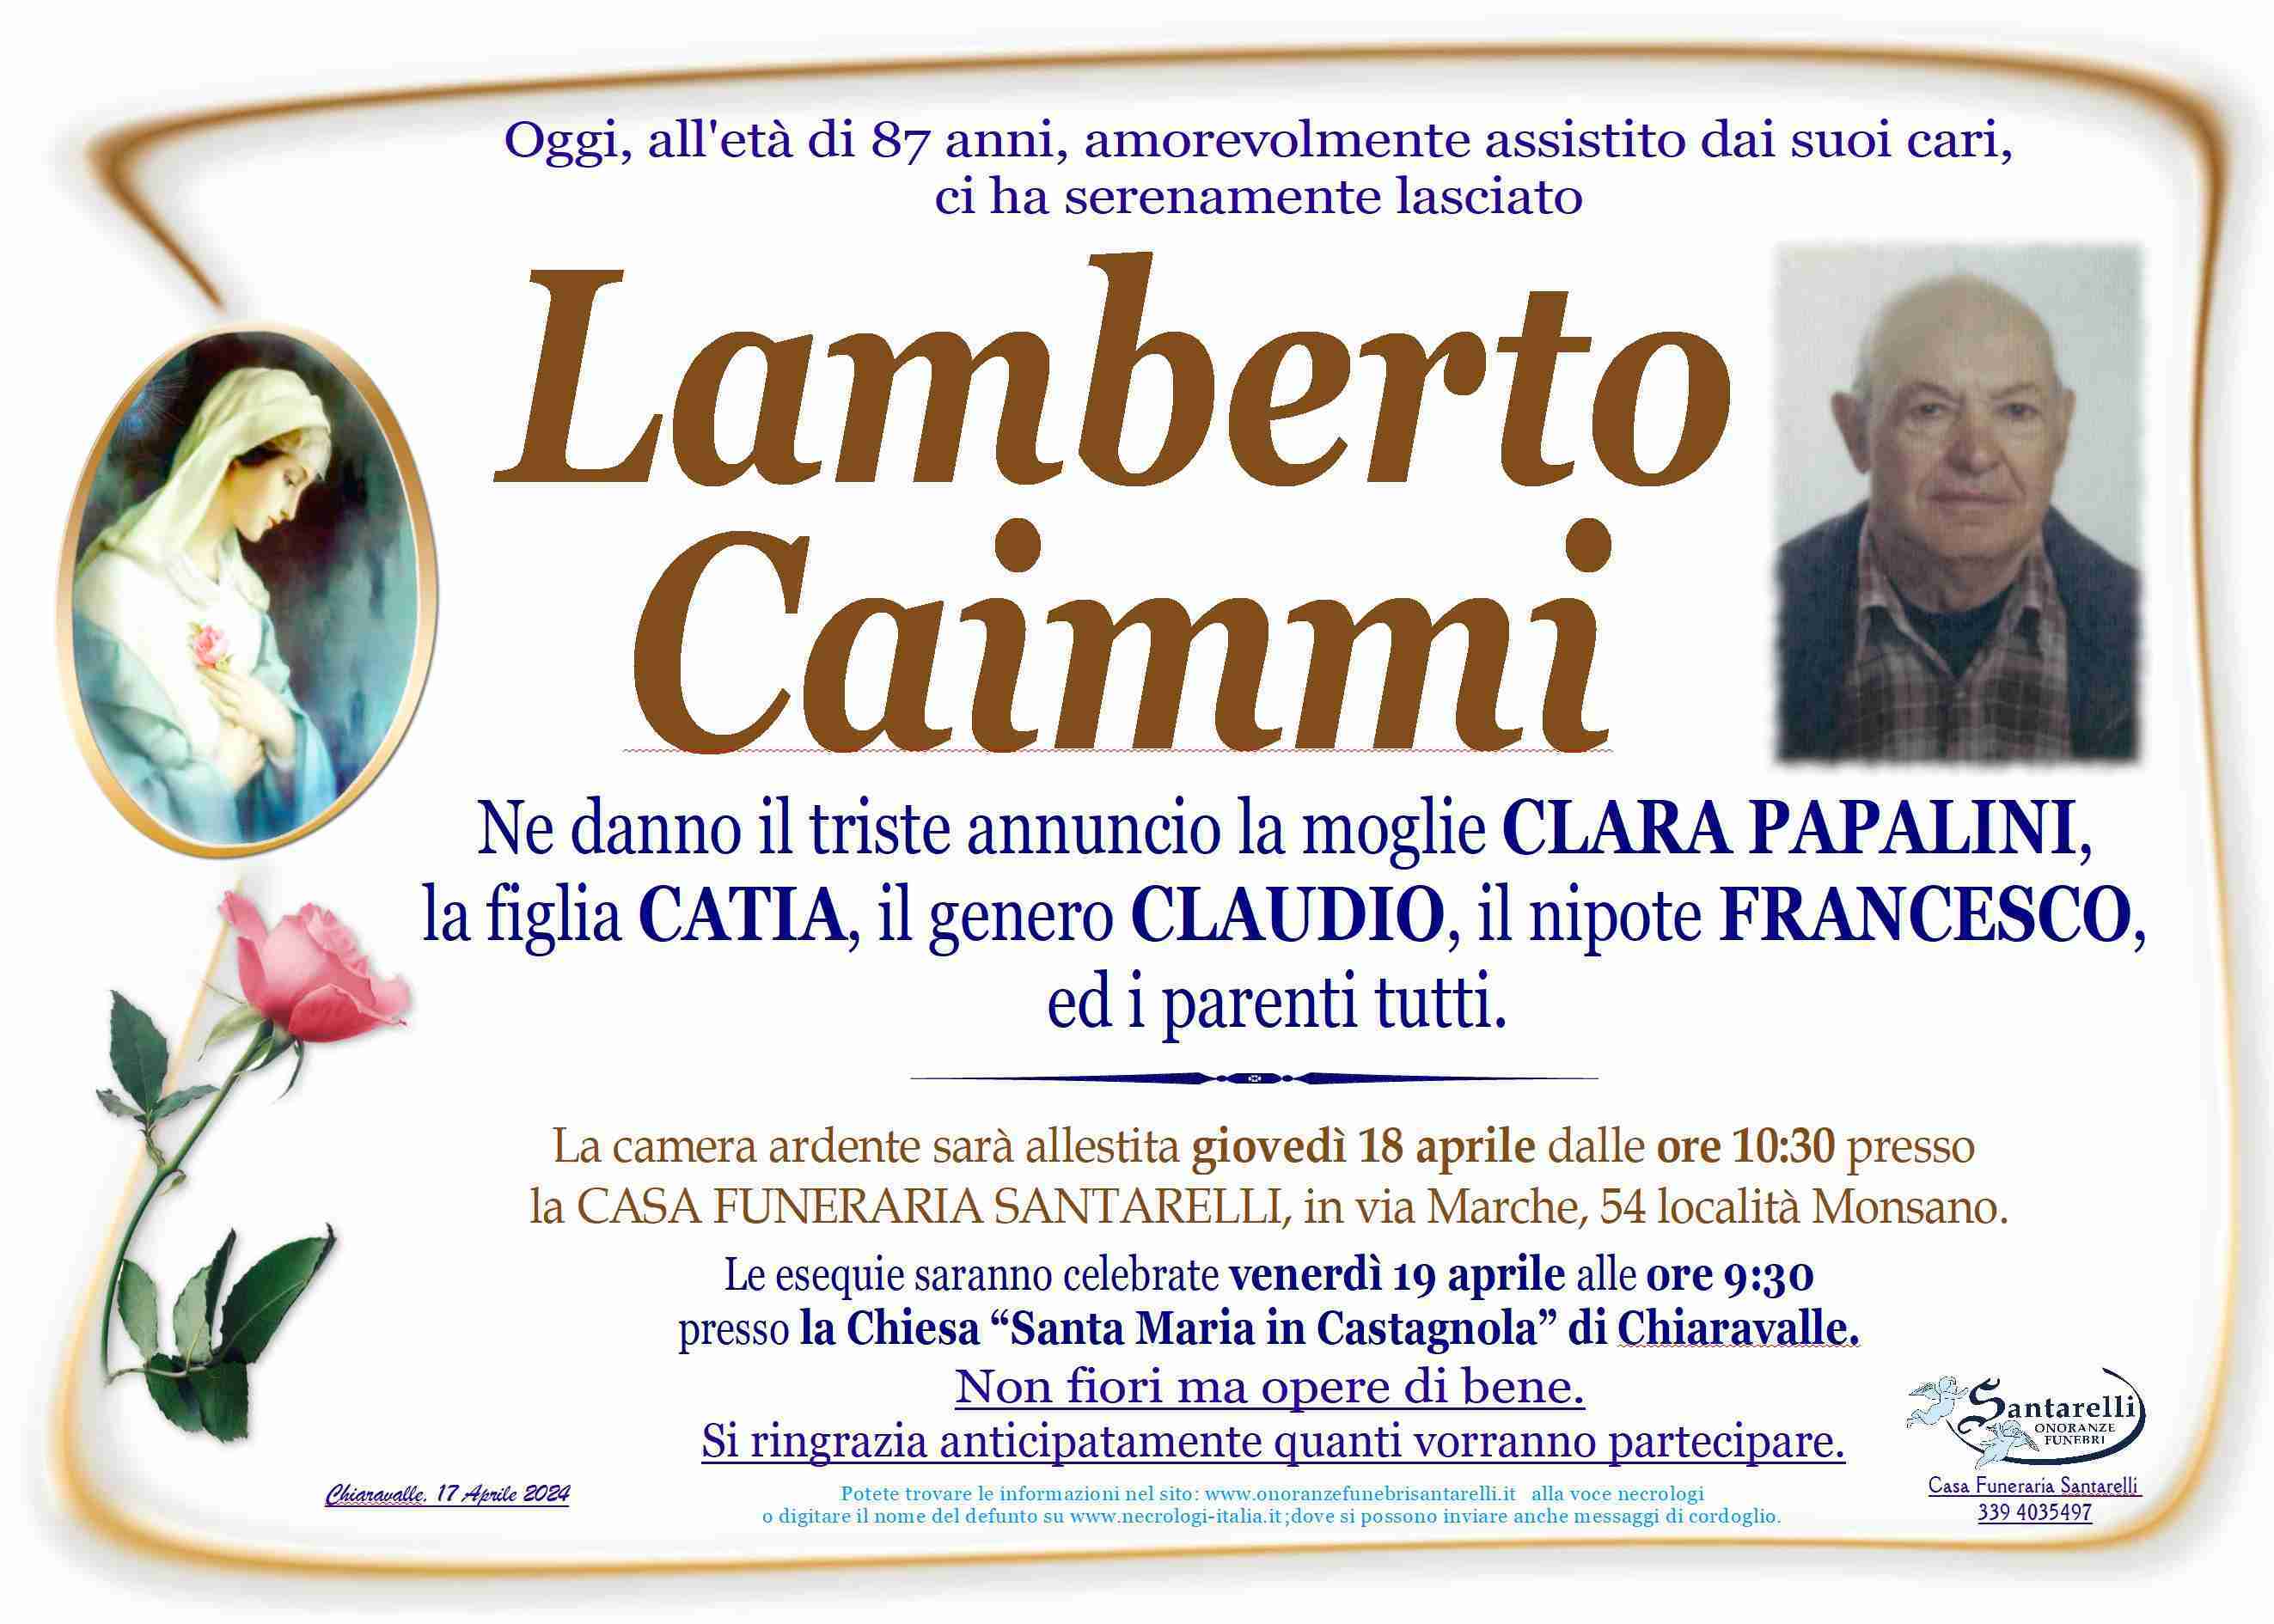 Lamberto Caimmi